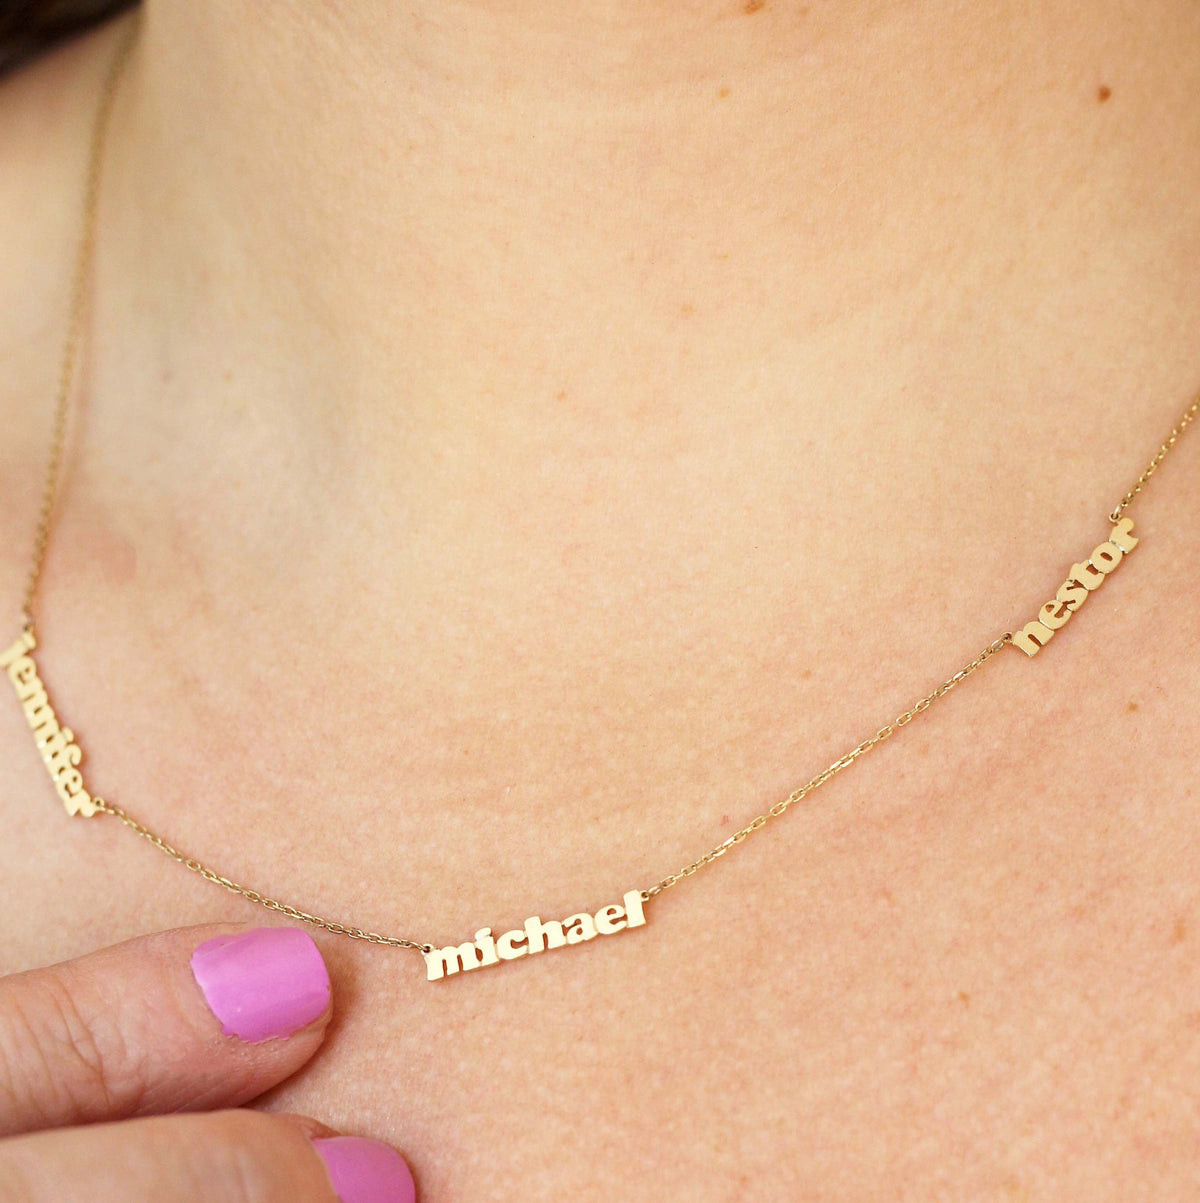 The "Precious Name" Necklace